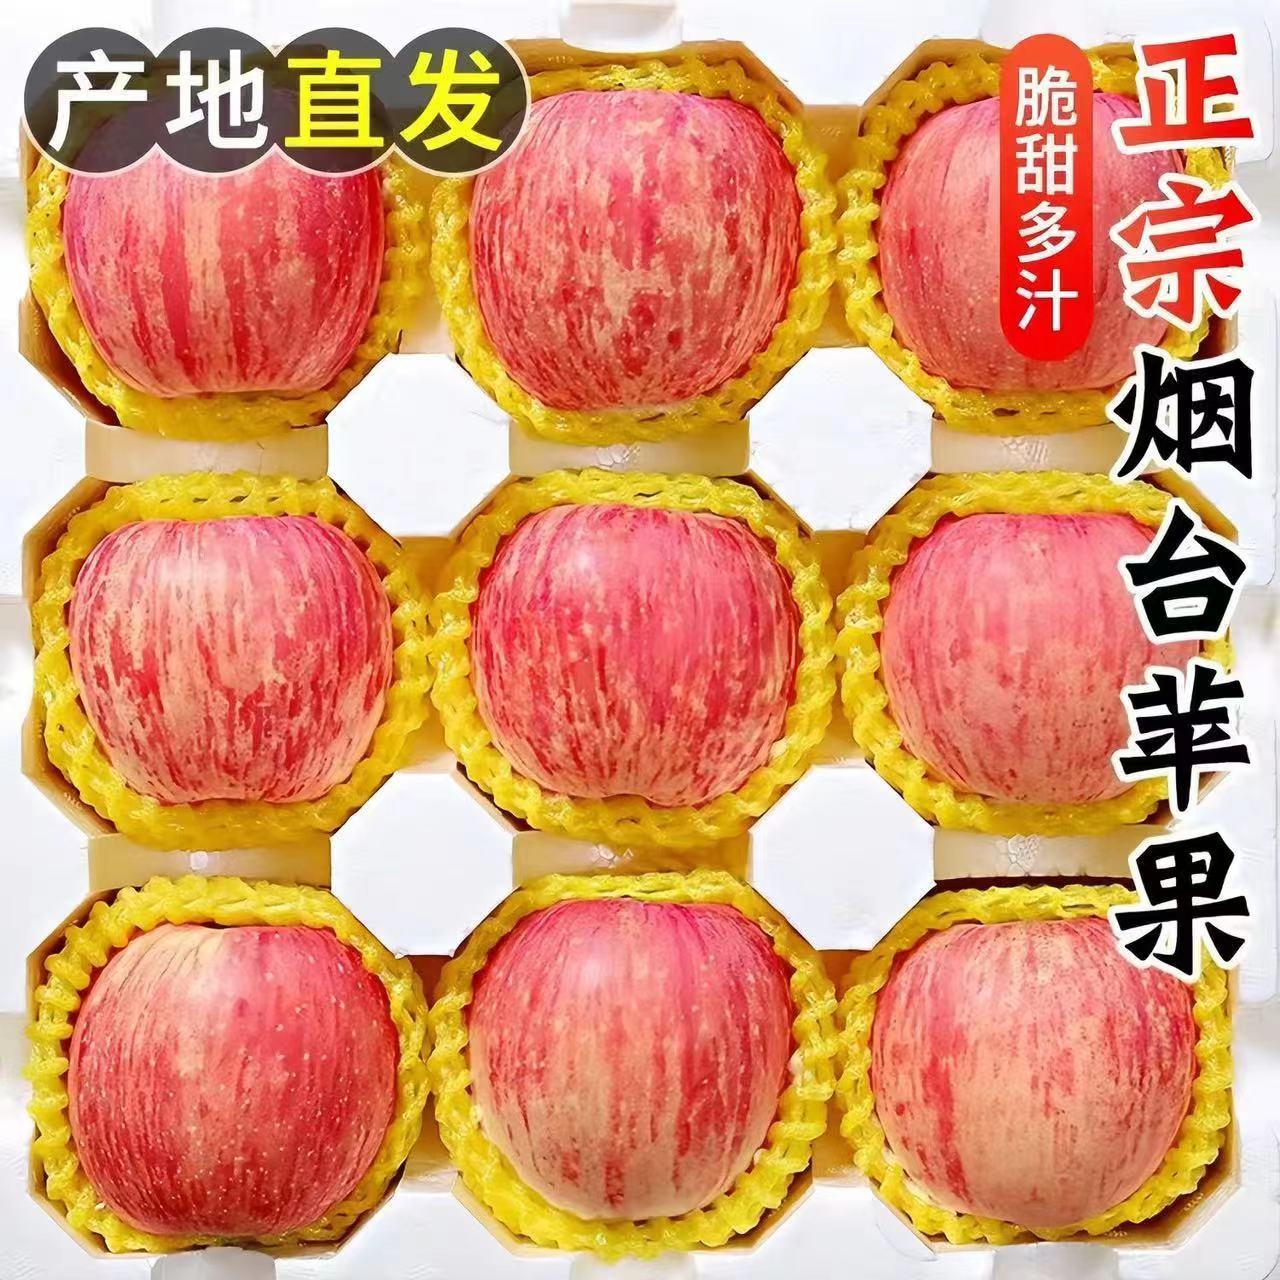 烟台红富士苹果水果10斤当季整箱正宗山东栖霞新鲜苹果包邮3/5